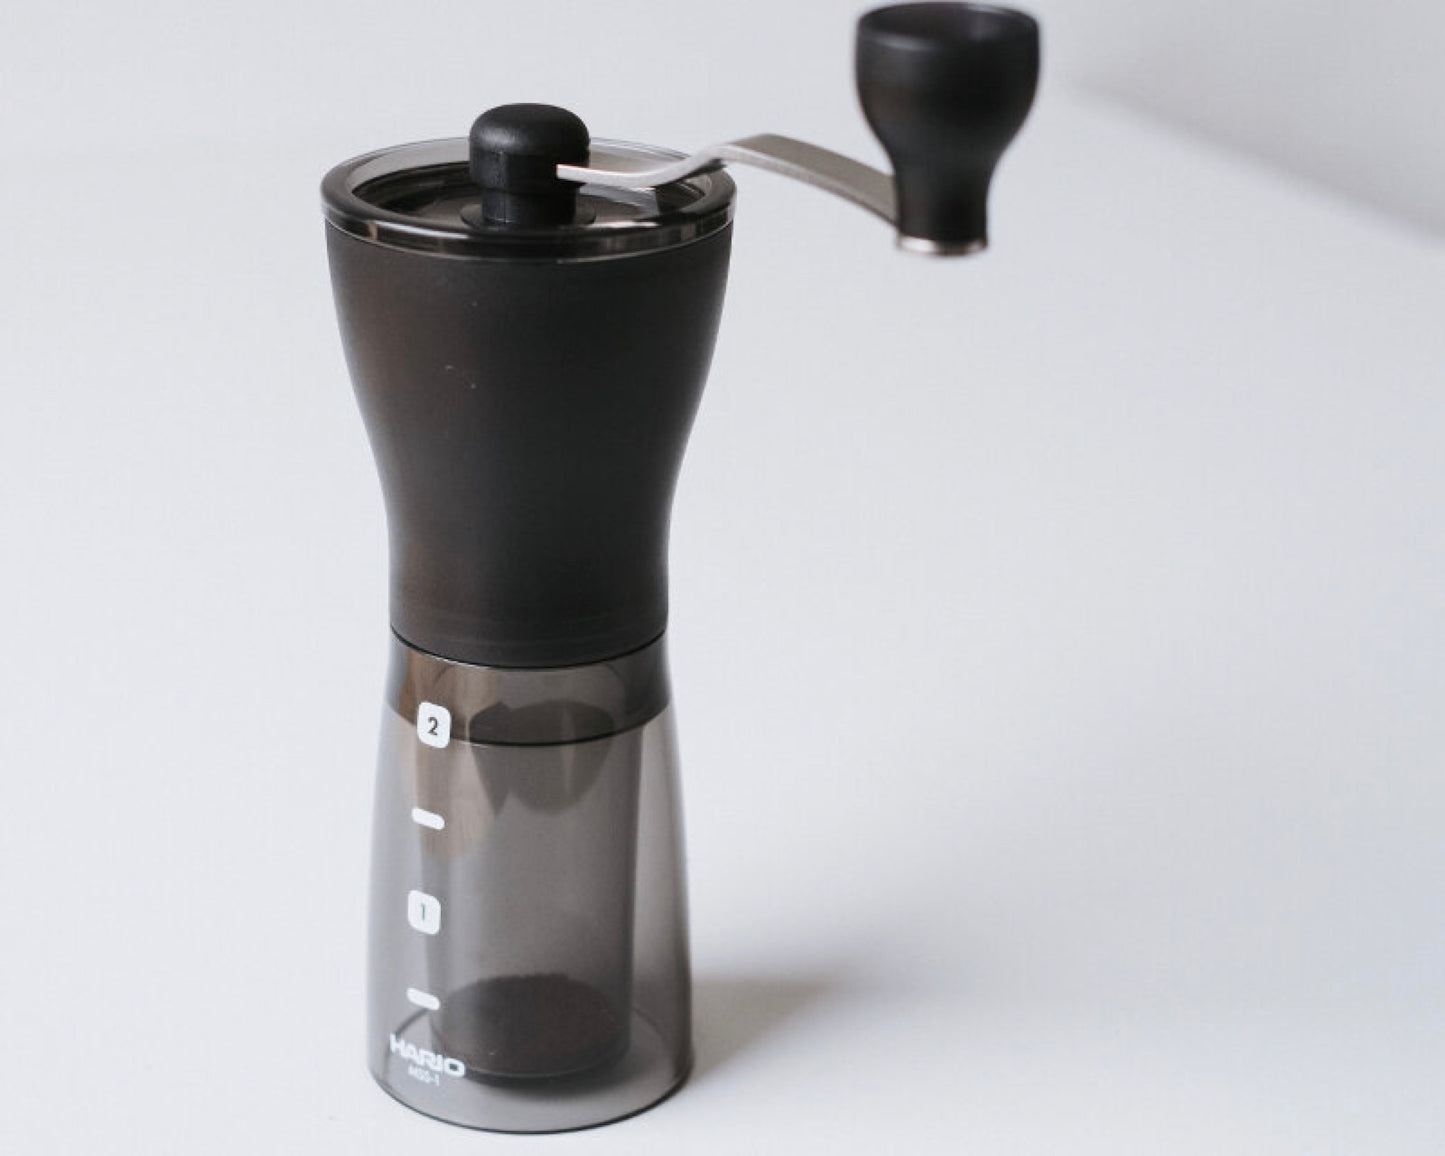 Hario Ceramic Coffee Mill Mini-Slim Plus lifestyle 1 11